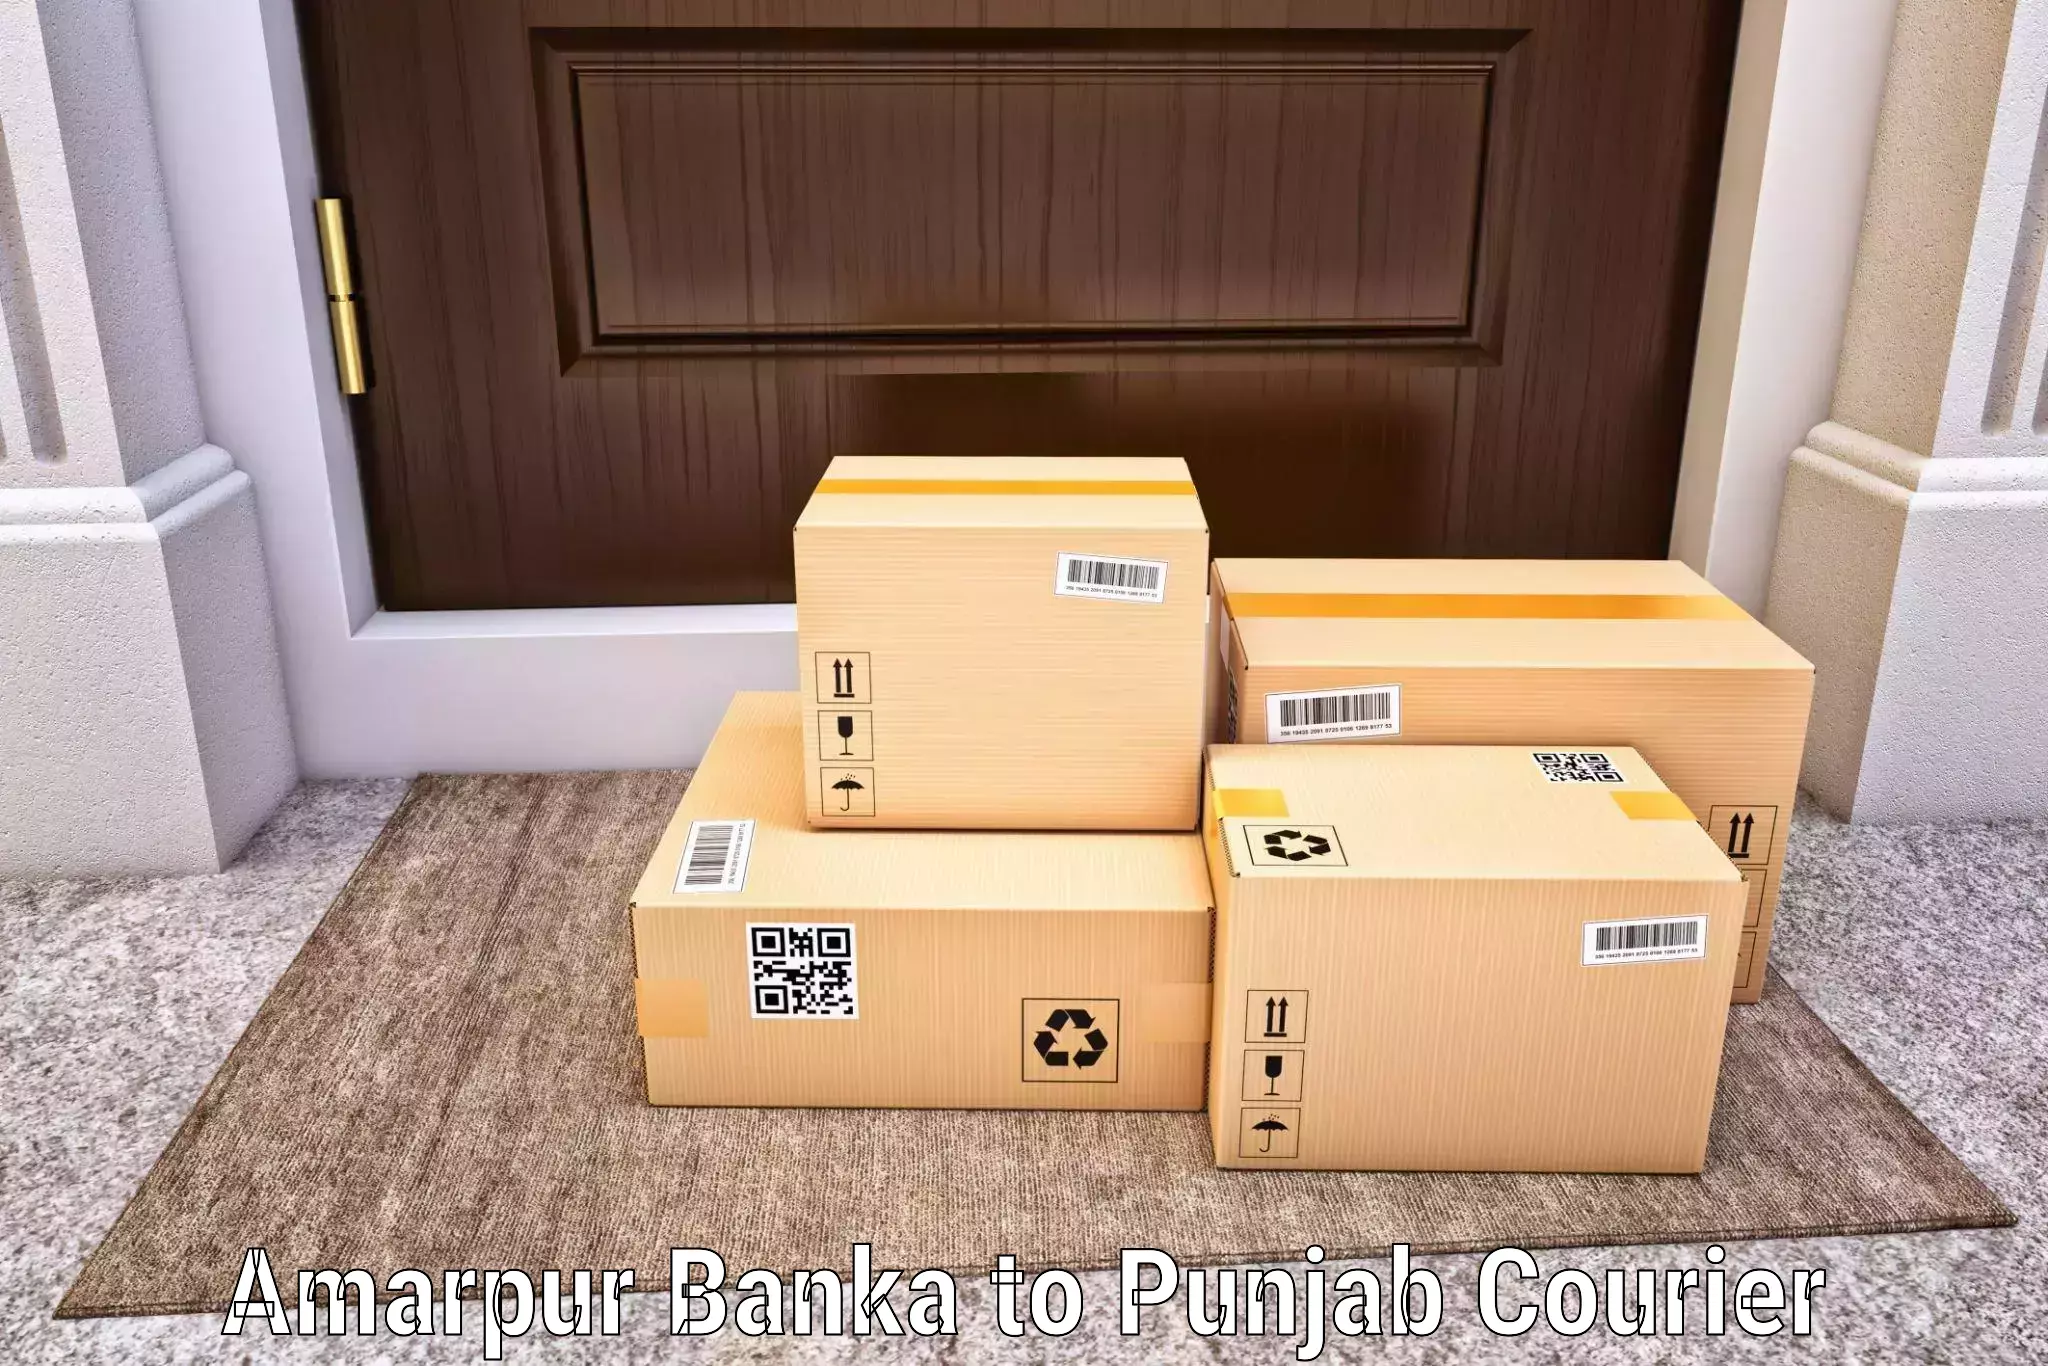 On-demand delivery Amarpur Banka to NIT Jallandhar